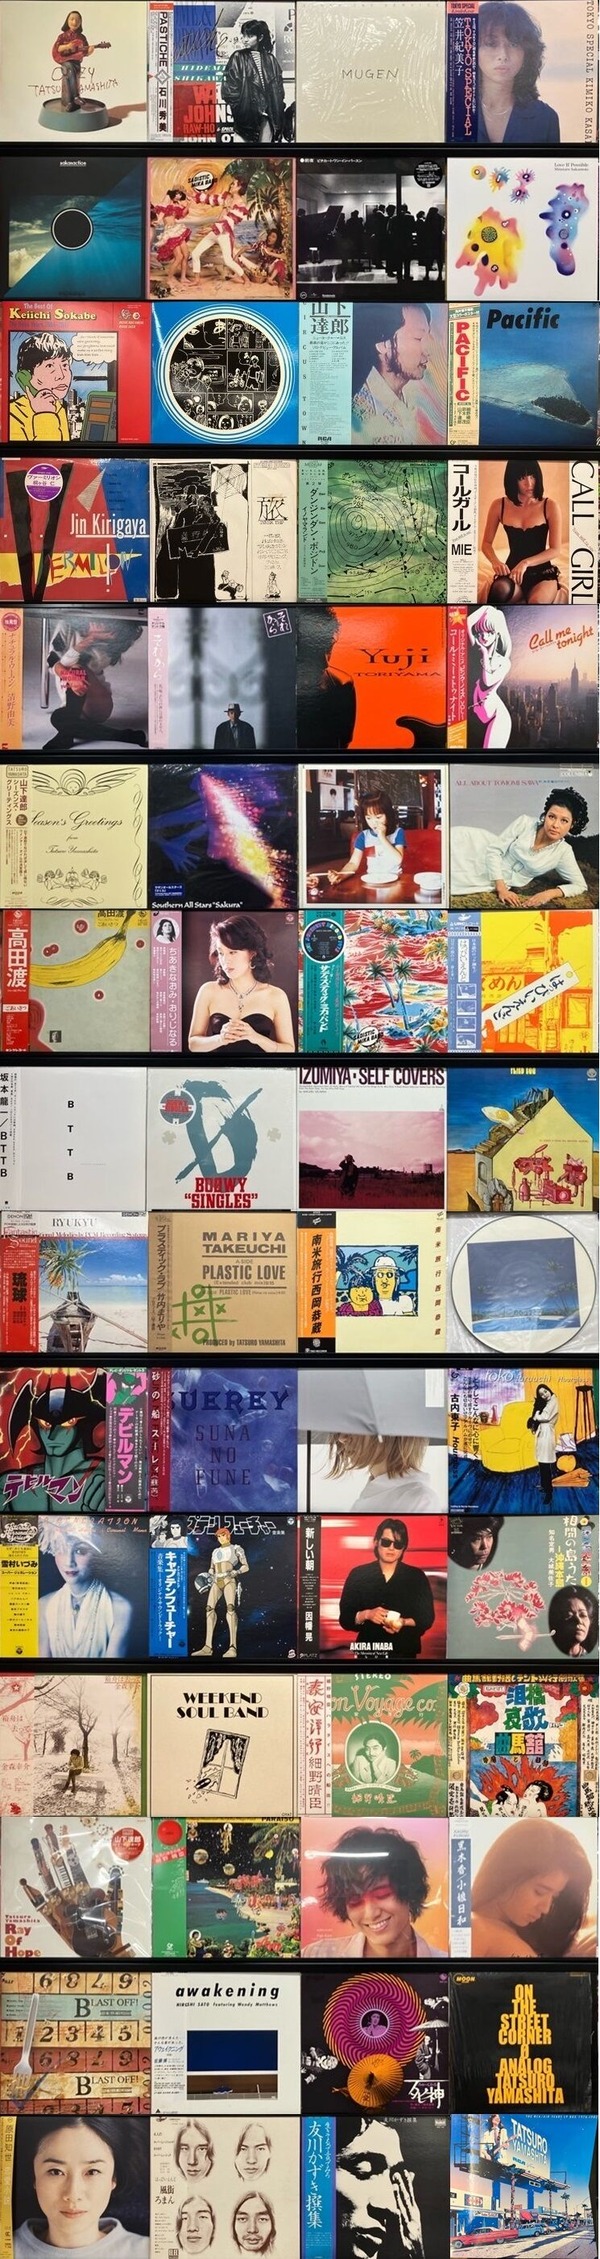 土日本のロック､ポップス 廃盤レコードセール｣ : CD・レコード